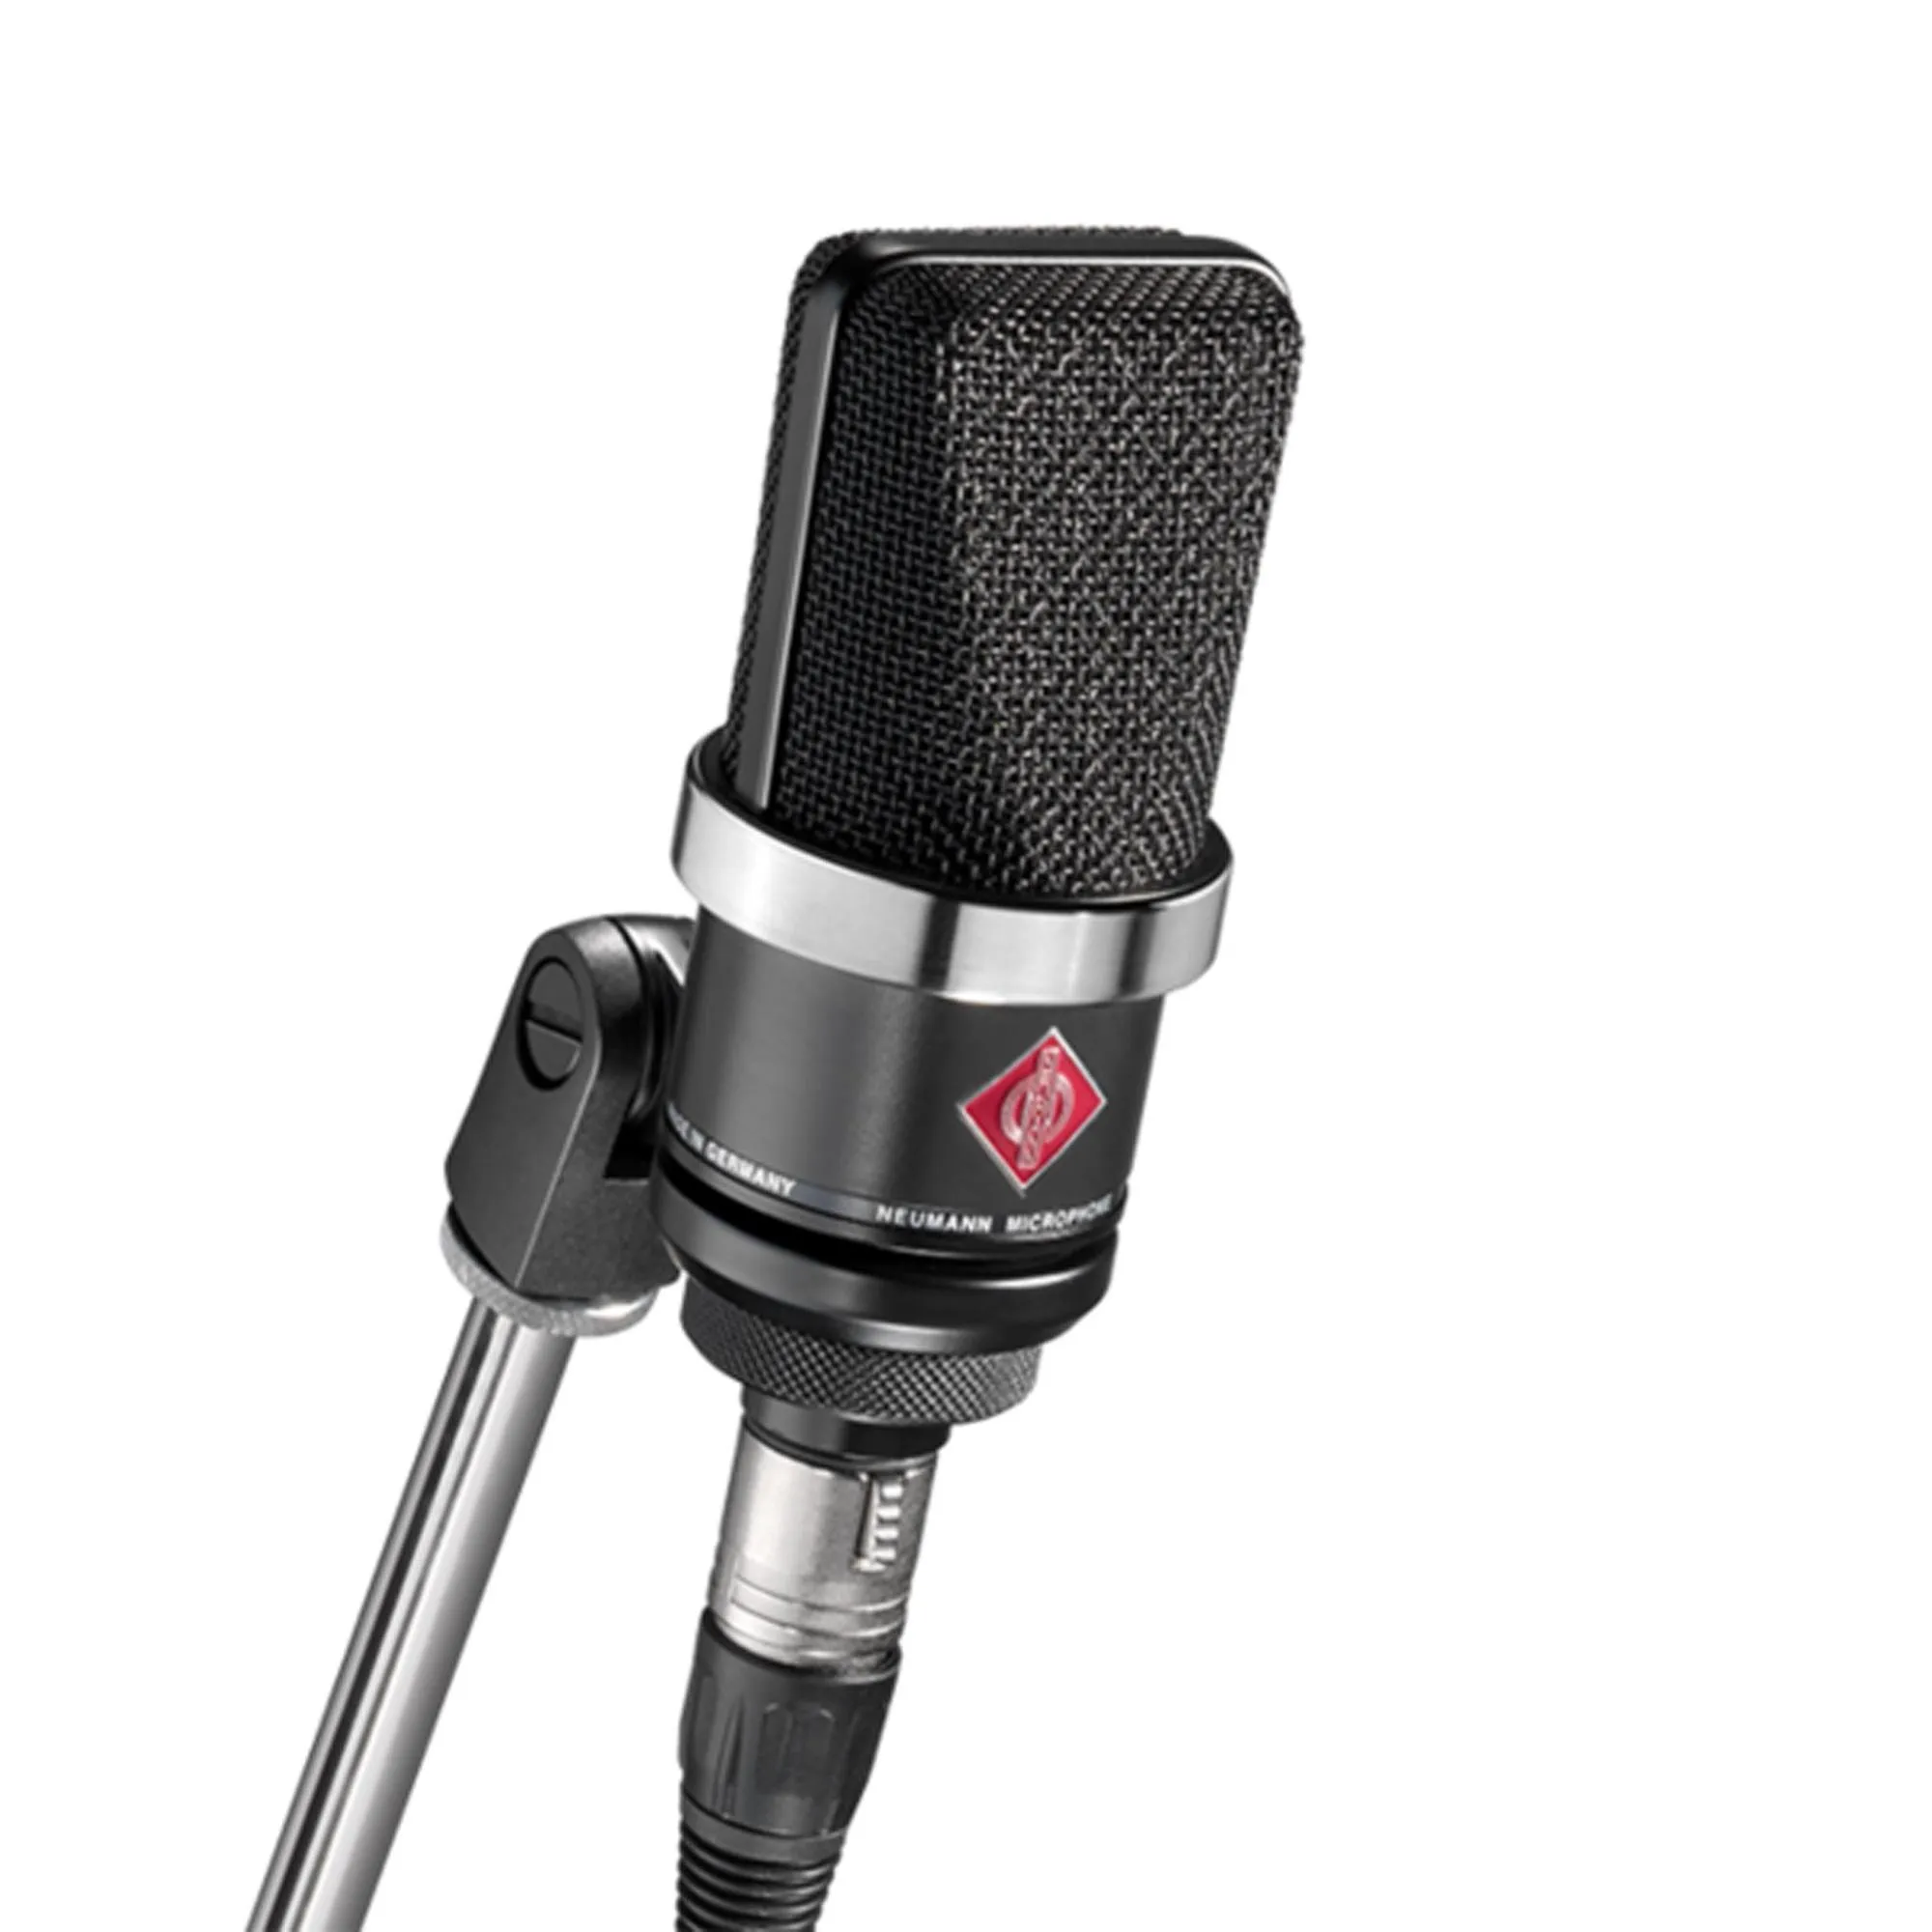 Microfone Neumann TLM 102 Cardióide Preto por 8.225,00 à vista no boleto/pix ou parcele em até 12x sem juros. Compre na loja Mundomax!